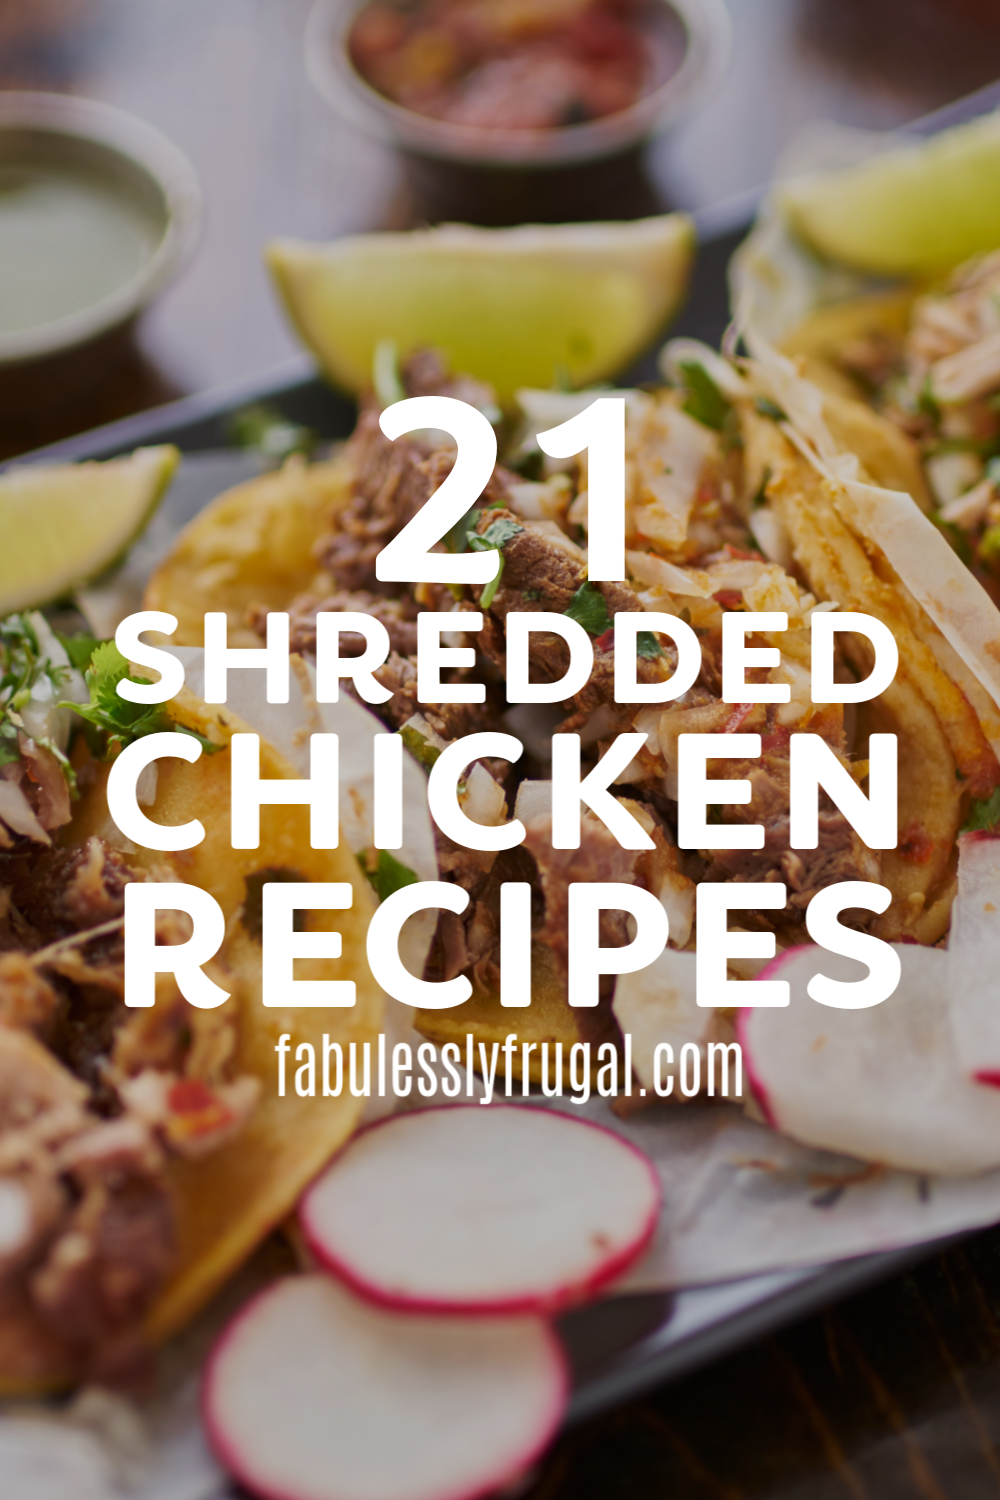 Shredded chicken recipes